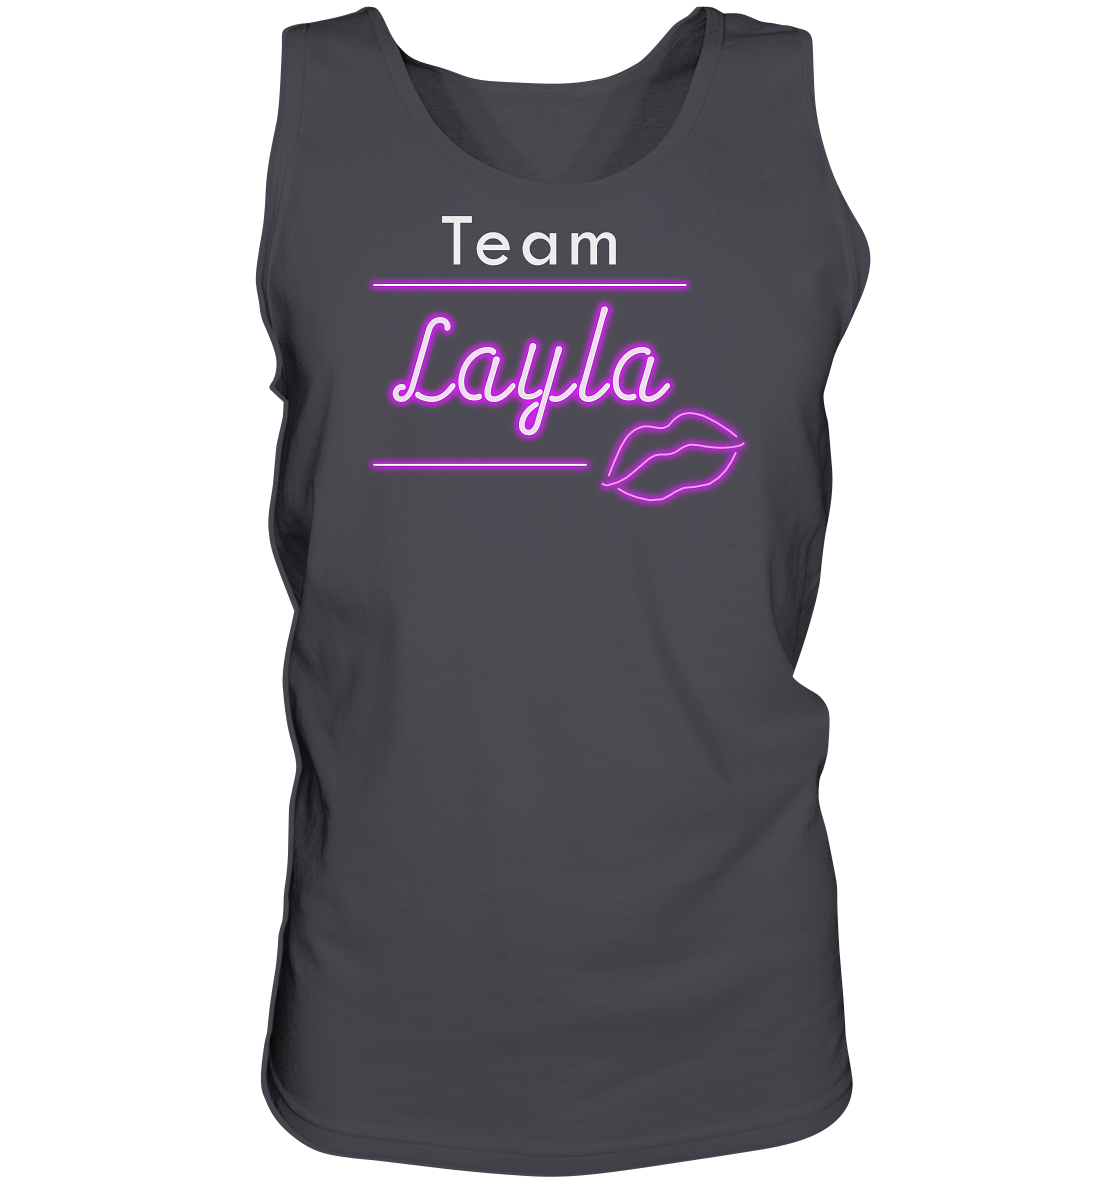 Willkommen im Team “Layla” das ultimative Partyshirt für Mallorca oder Volksfest – Tank-Top